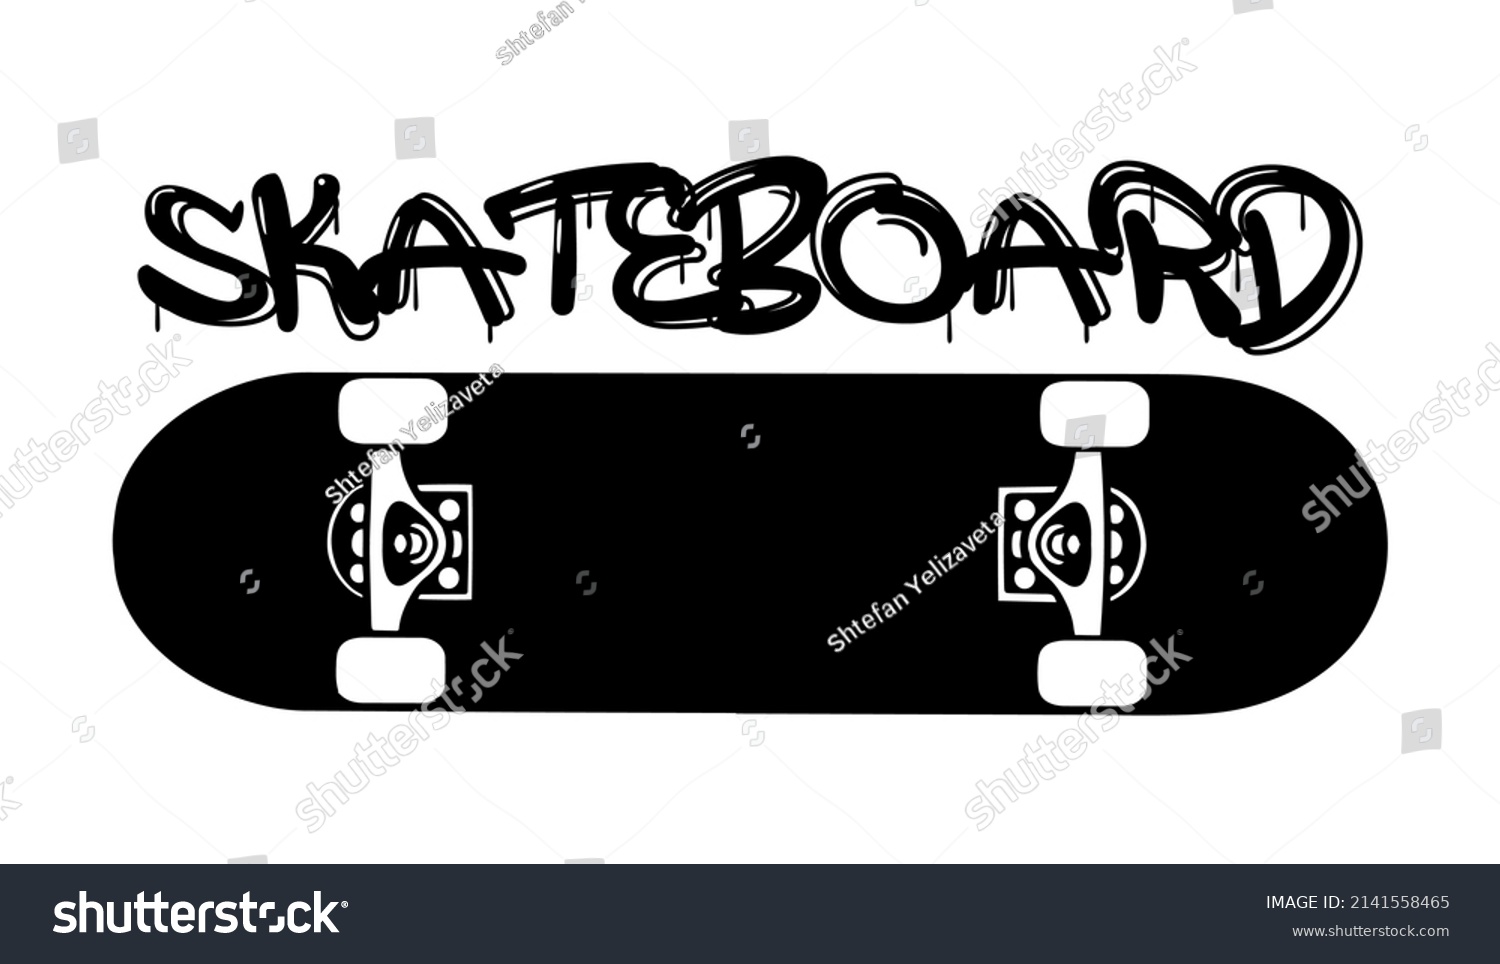 SVG of Skateboard skate park vintage logo. Skateboarding retro emblem. Vector illustration.Skateboard vector illustration.T-shirt apparel print design. Scratch board imitation. Black and white hand drawn art svg